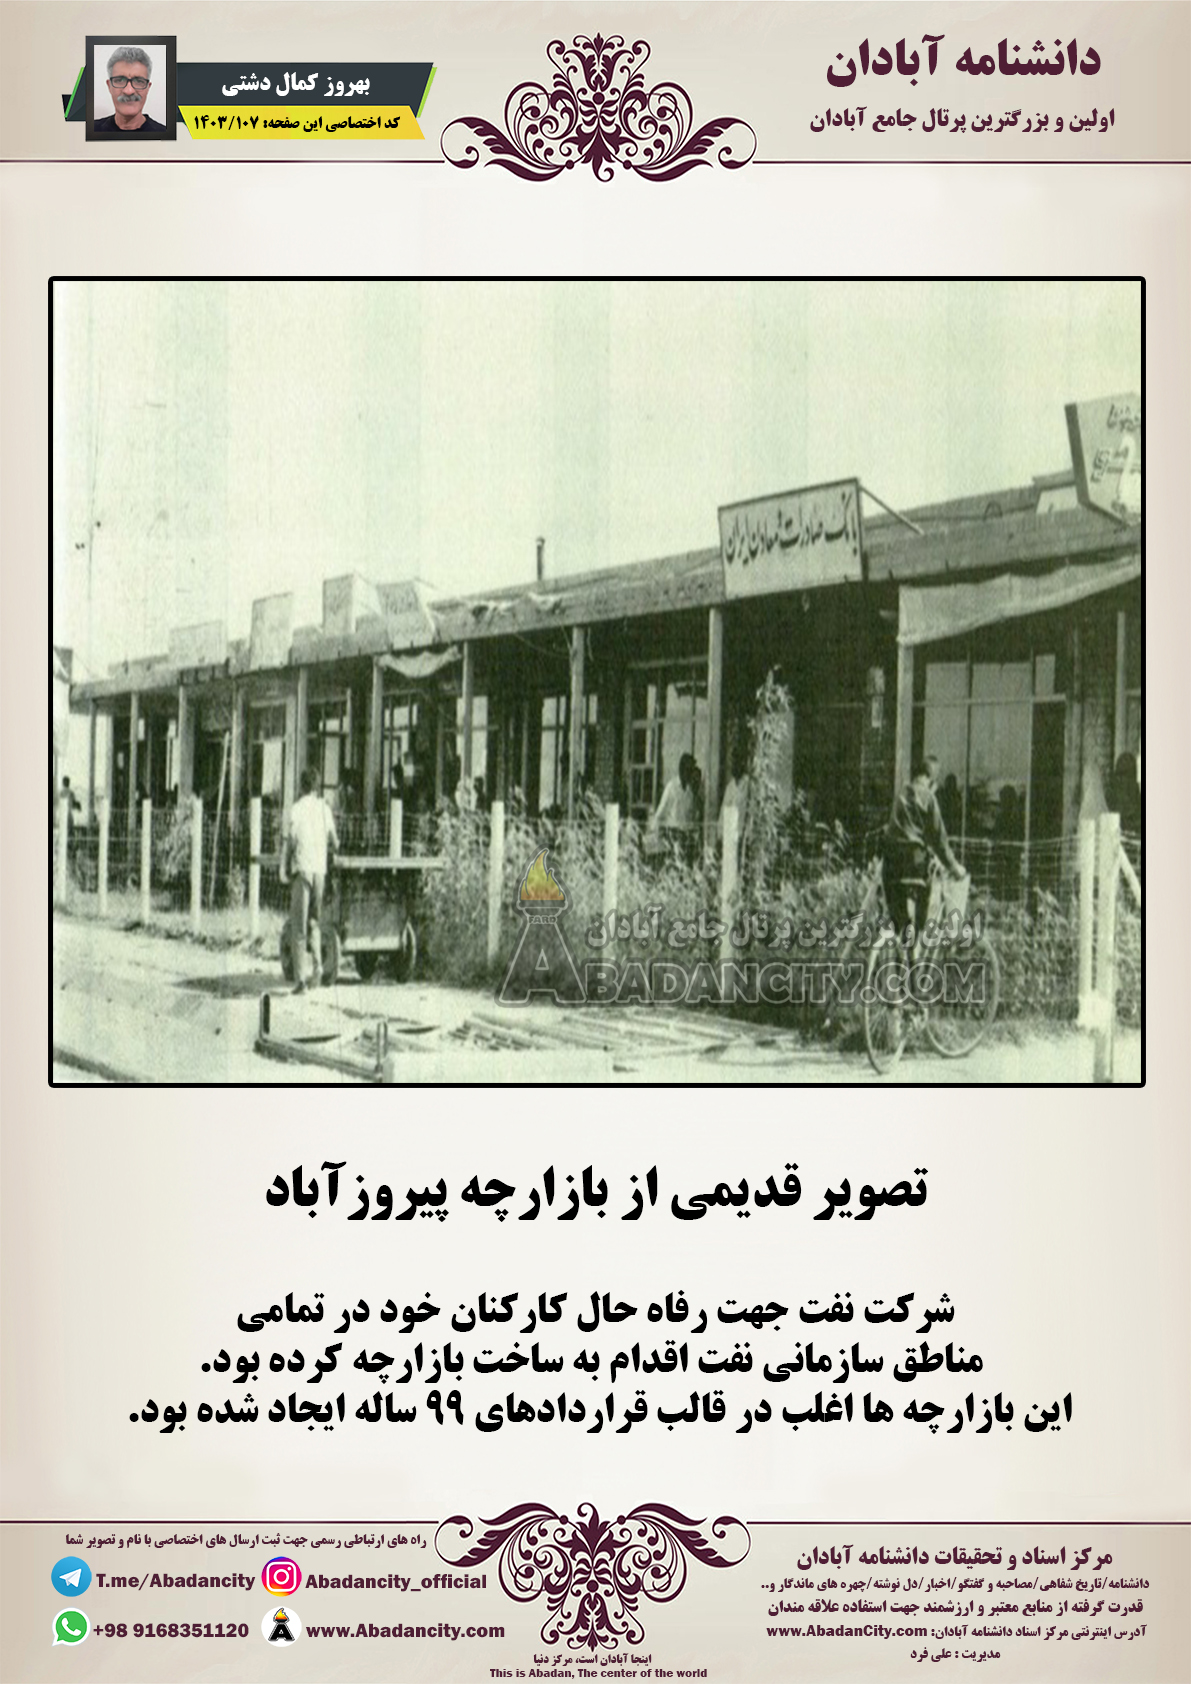 تصویر قدیمی از بازارچه پیروزآباد